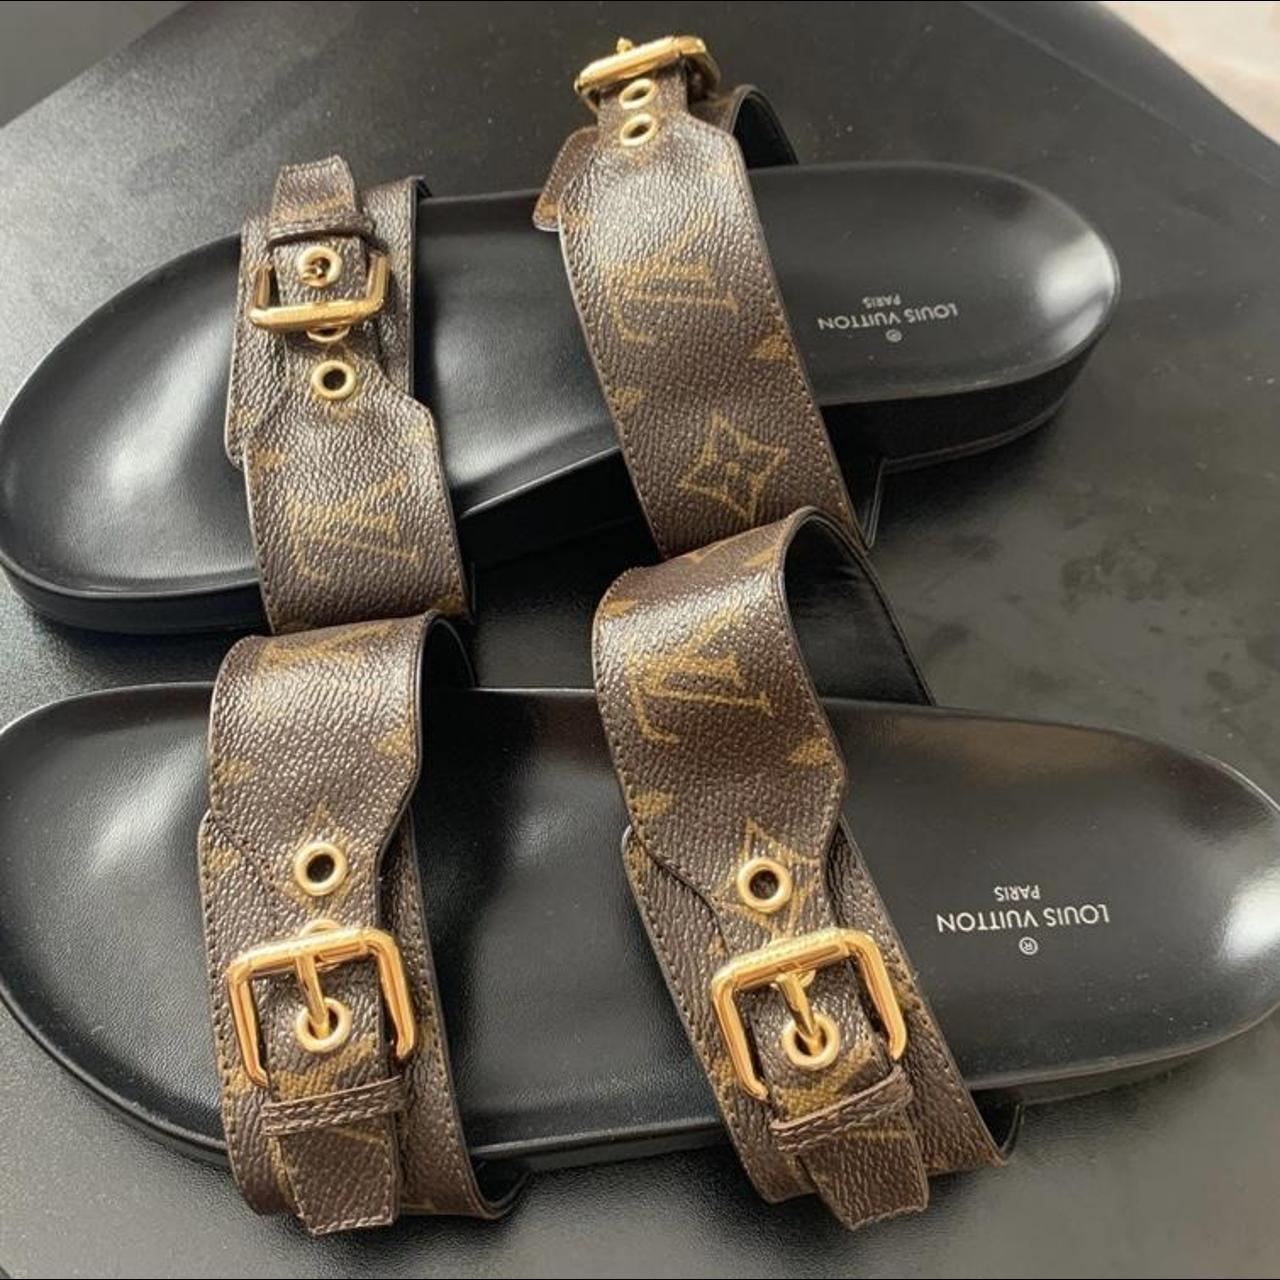 Authentic LV leather men Sandals - Depop